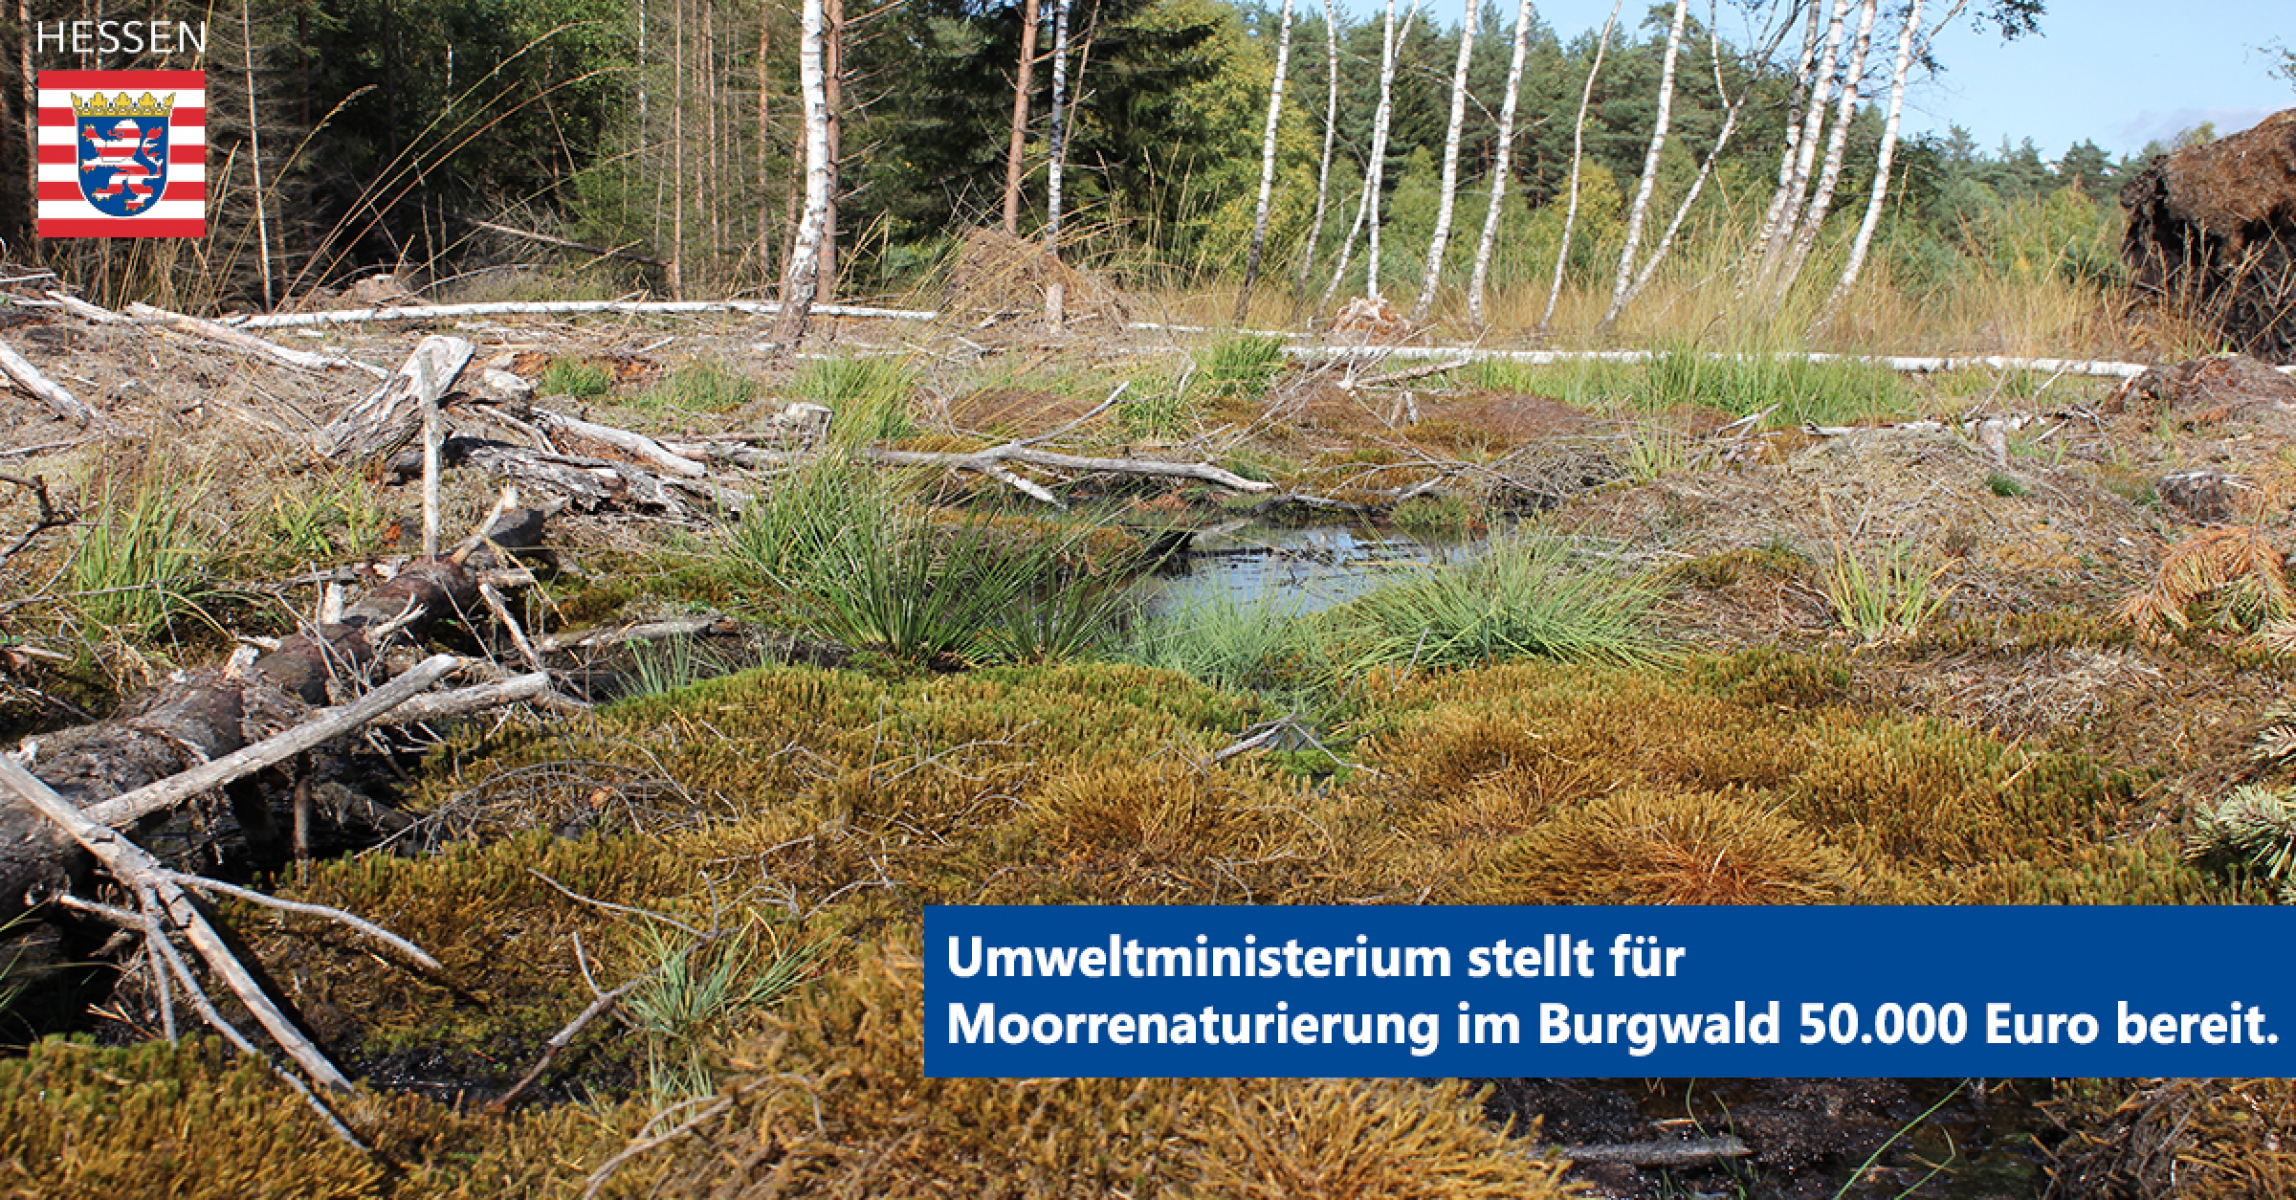 Umweltministerium stellt für Moorrenaturierung im Burgwald 50.000 Euro bereit